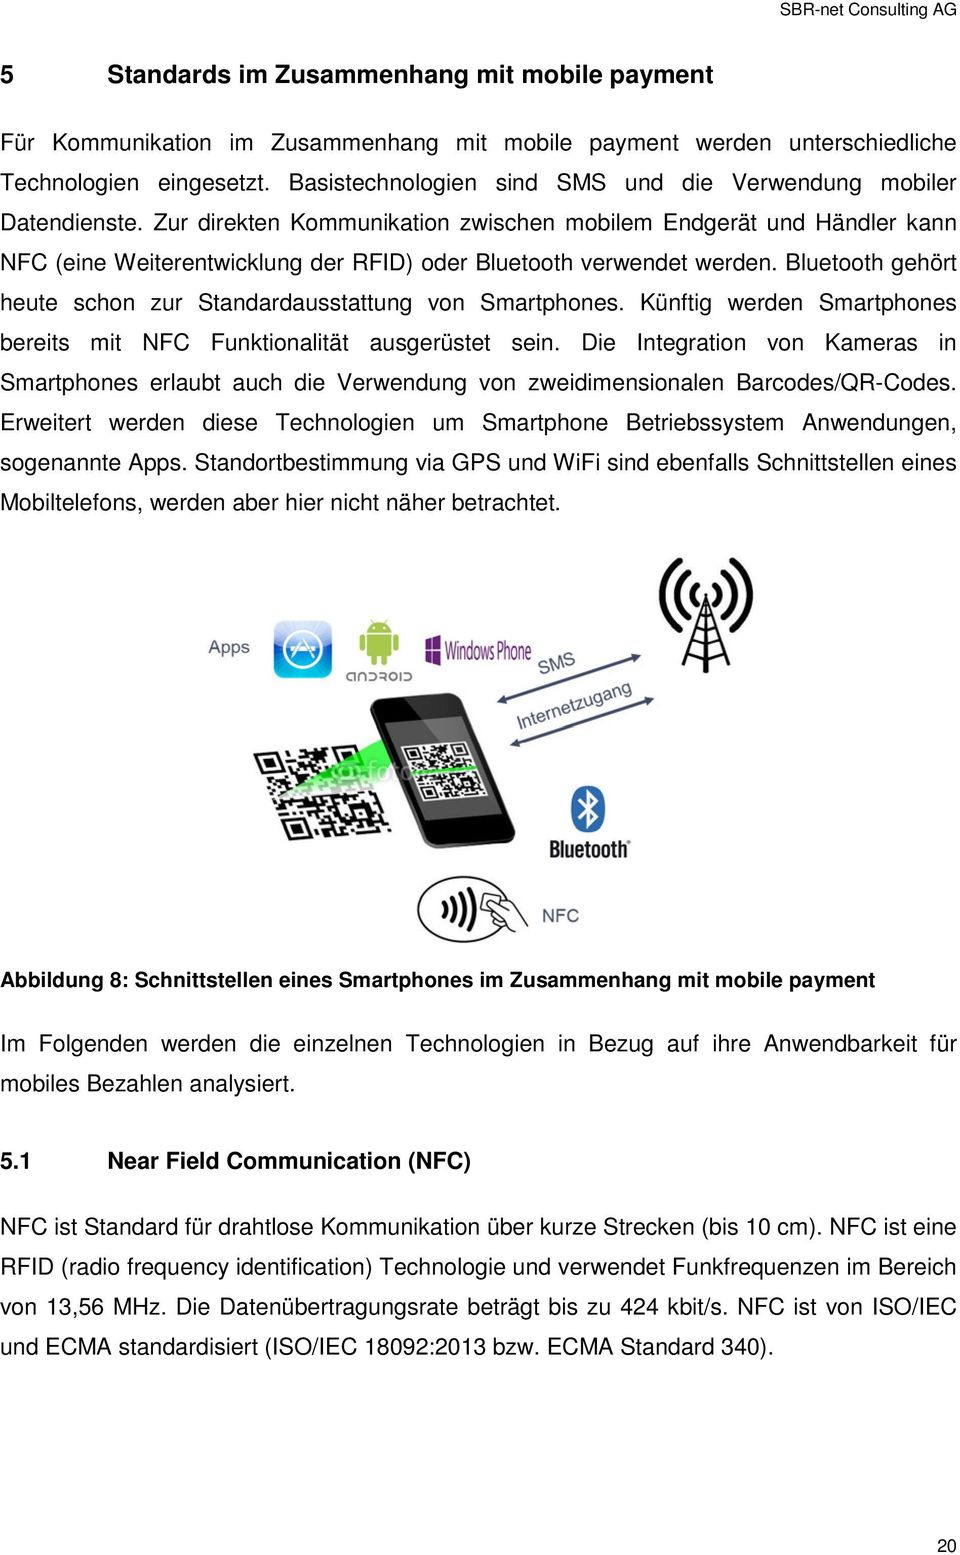 Zur direkten Kommunikation zwischen mobilem Endgerät und Händler kann NFC (eine Weiterentwicklung der RFID) oder Bluetooth verwendet werden.